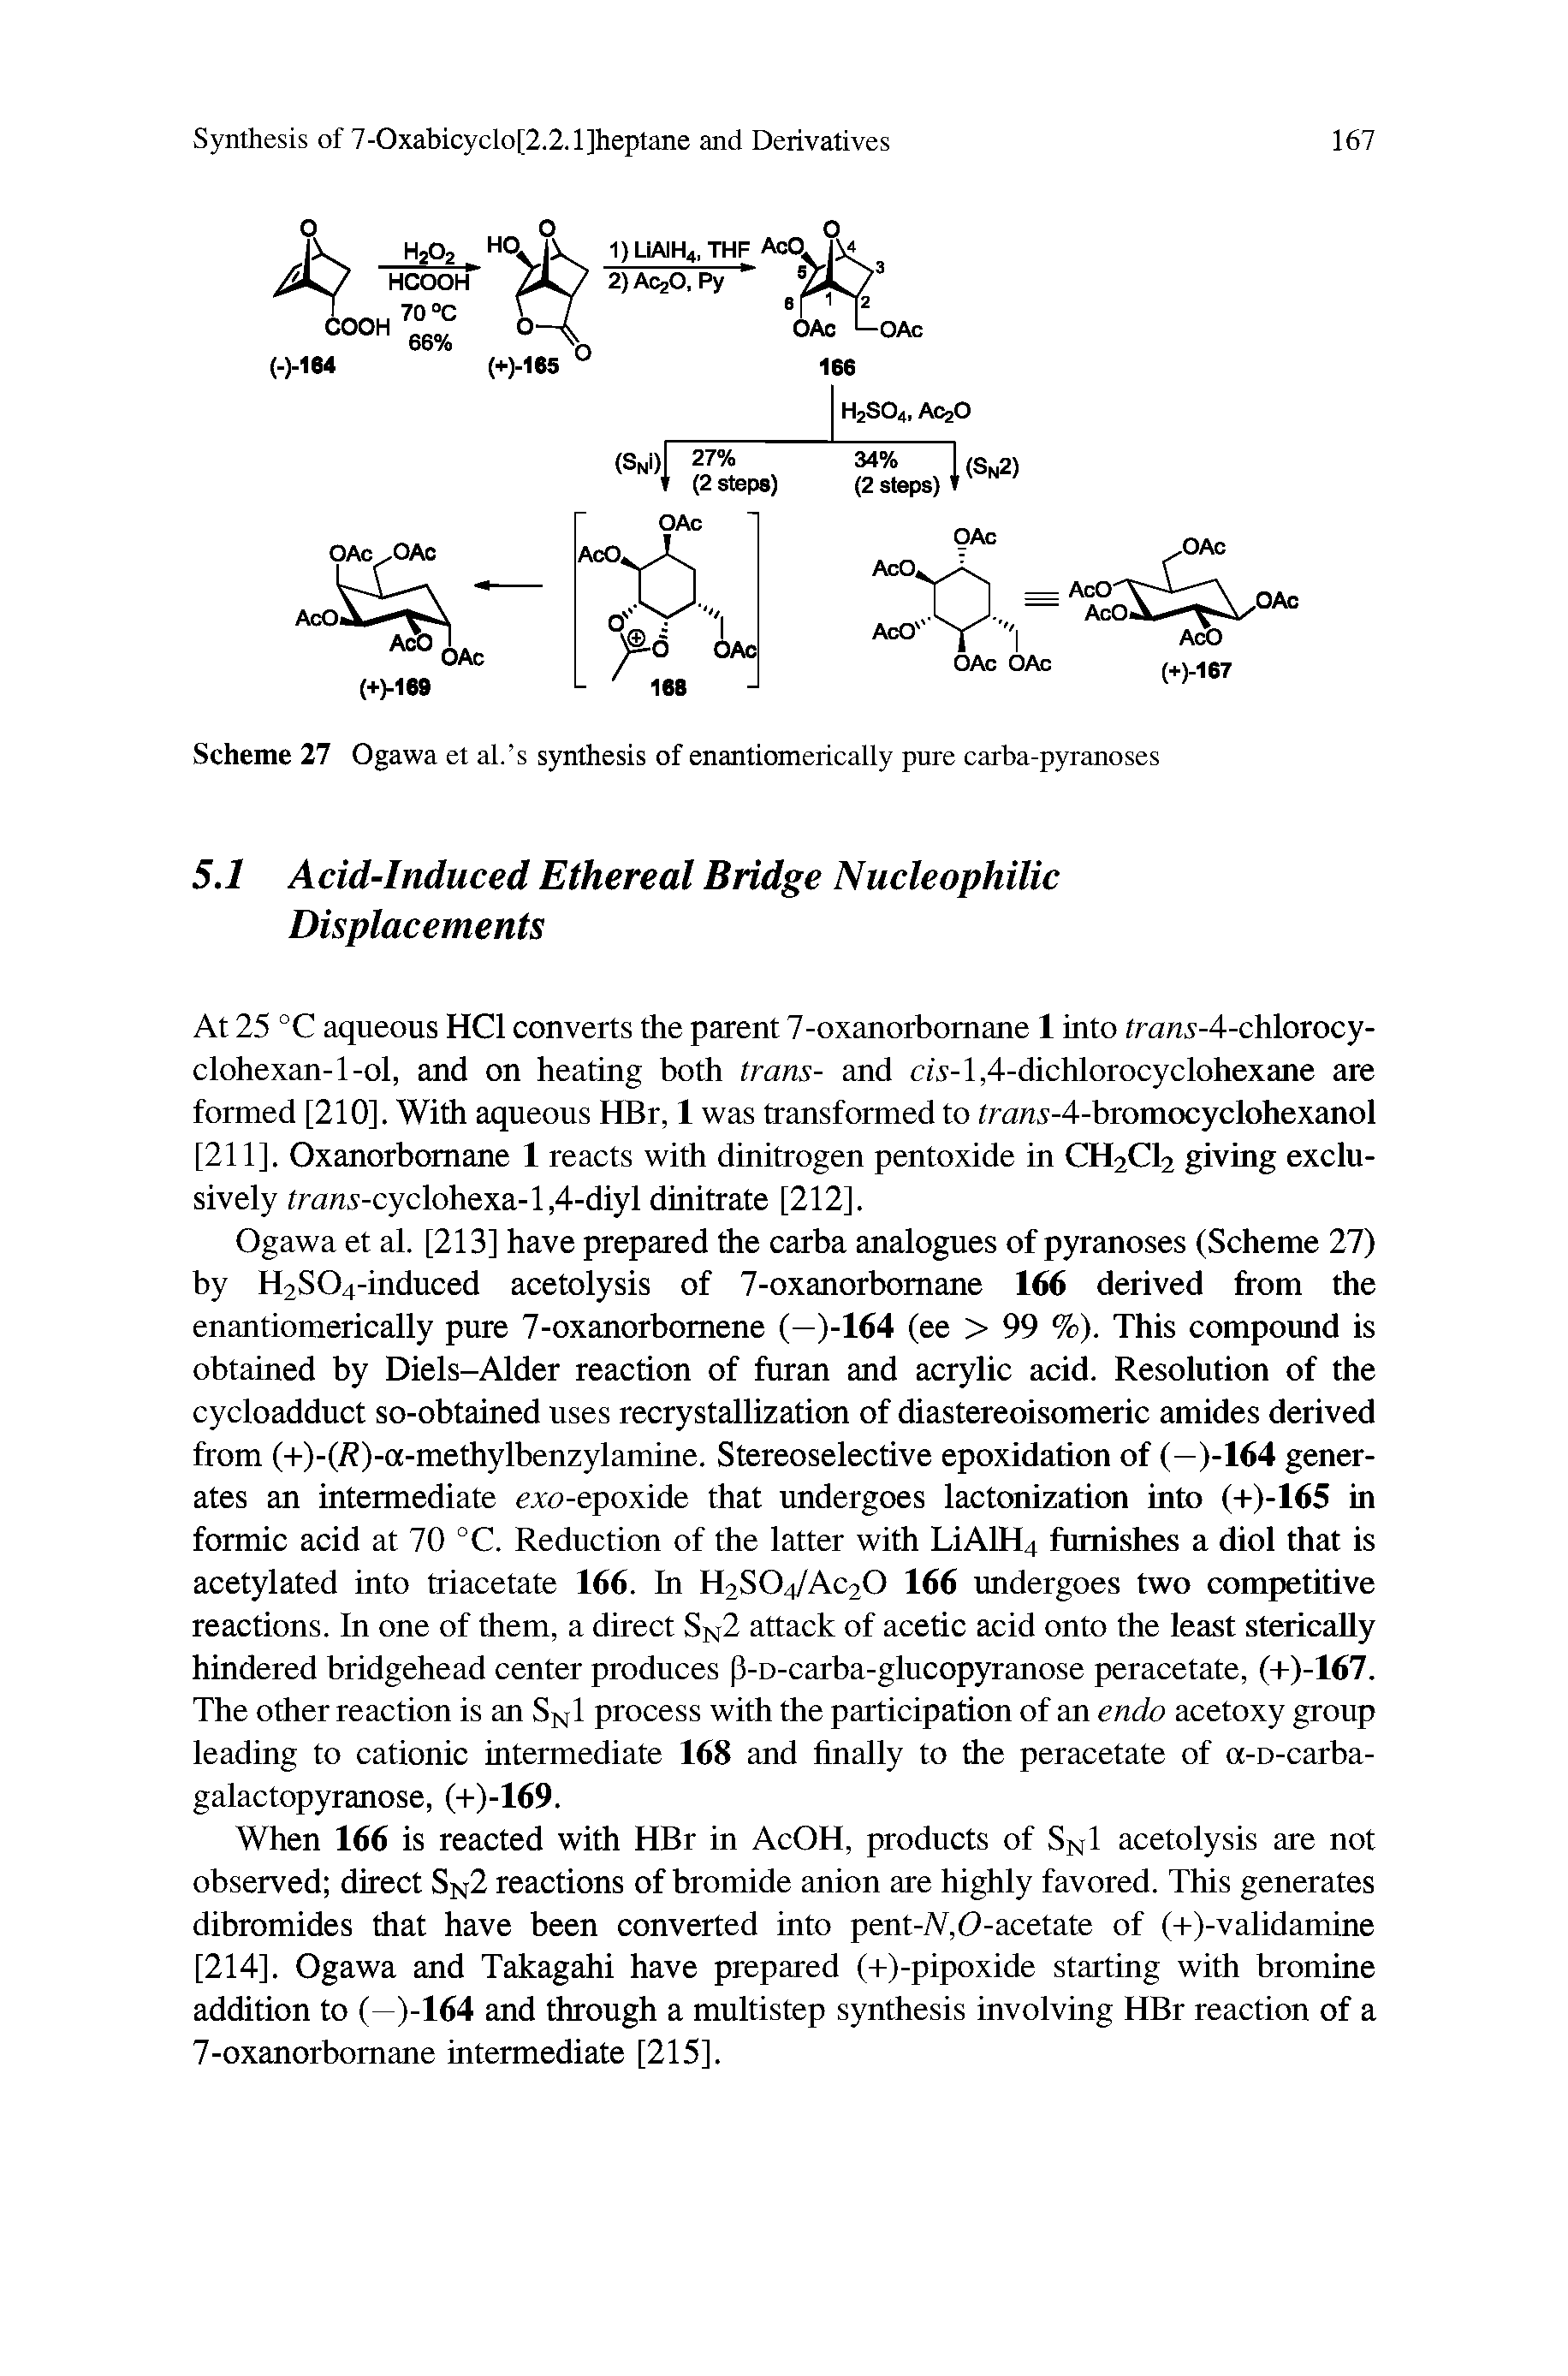 Scheme 27 Ogawa et al. s synthesis of enantiomerically pure carba-pyranoses...